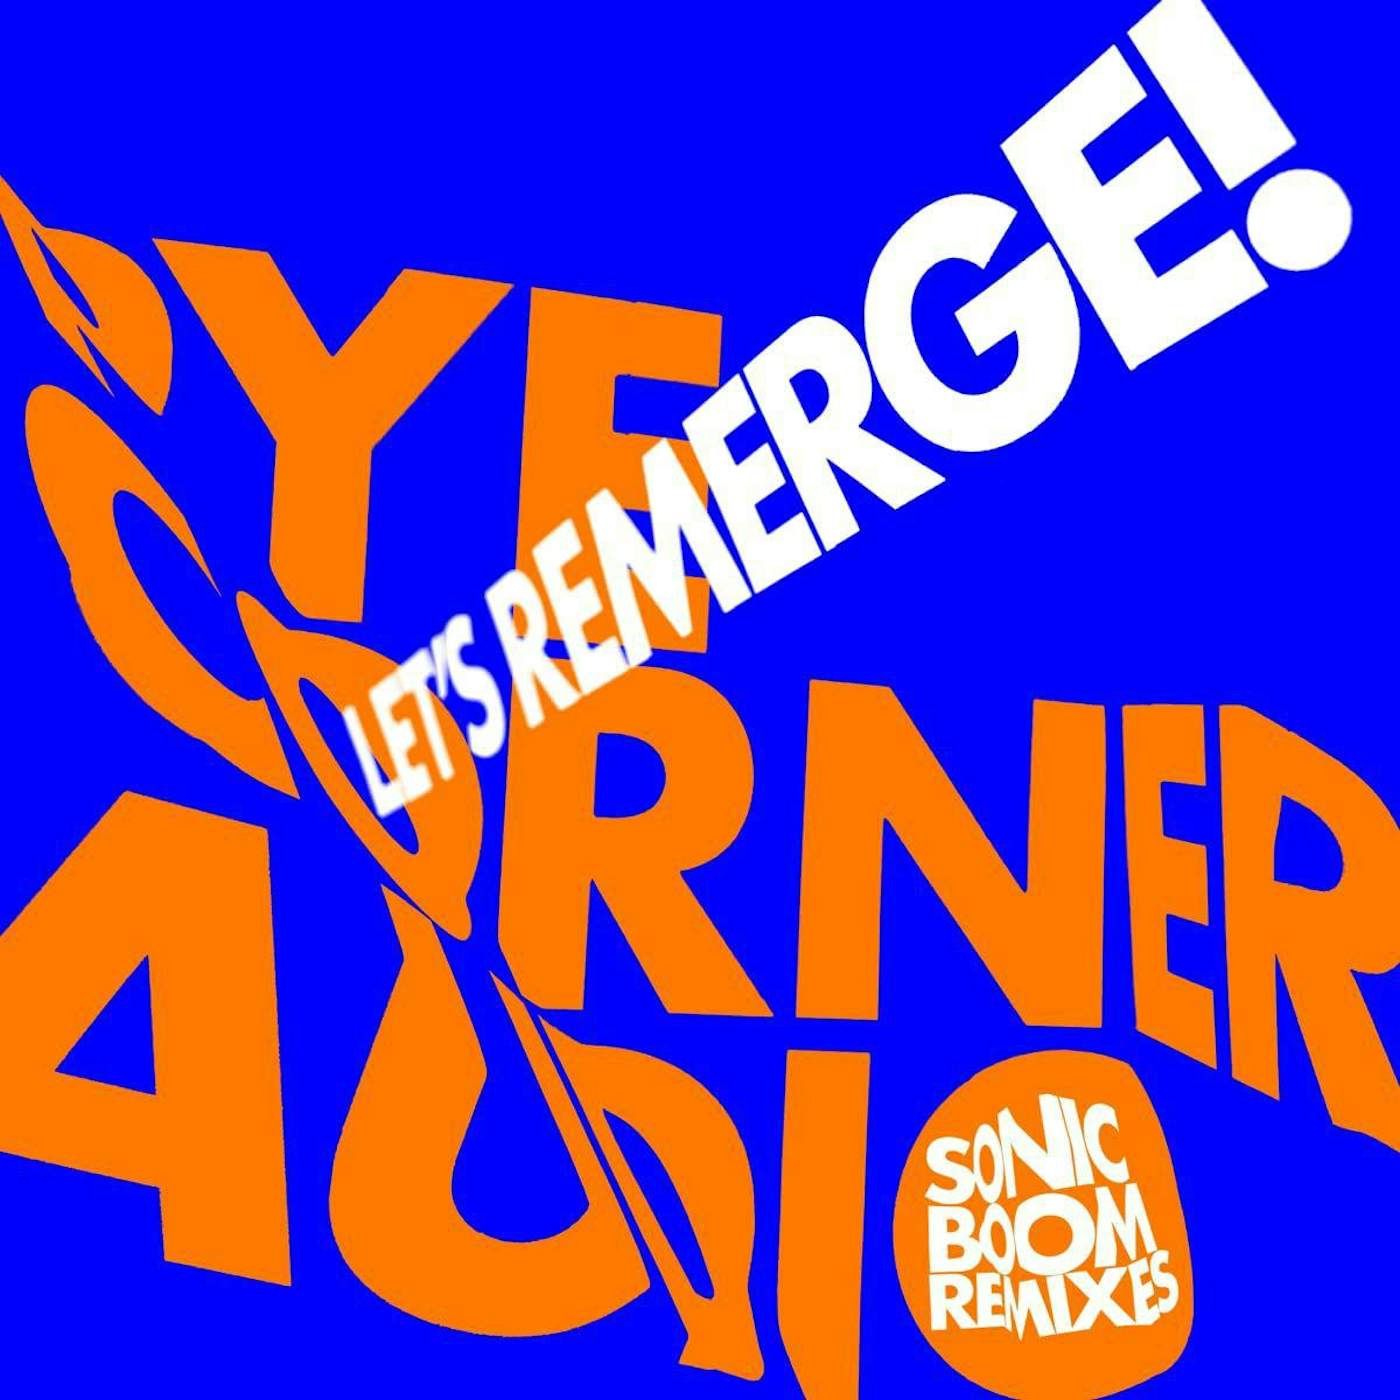 Pye Corner Audio Let's Remerge (Sonic Boom Remixes) Vinyl Record